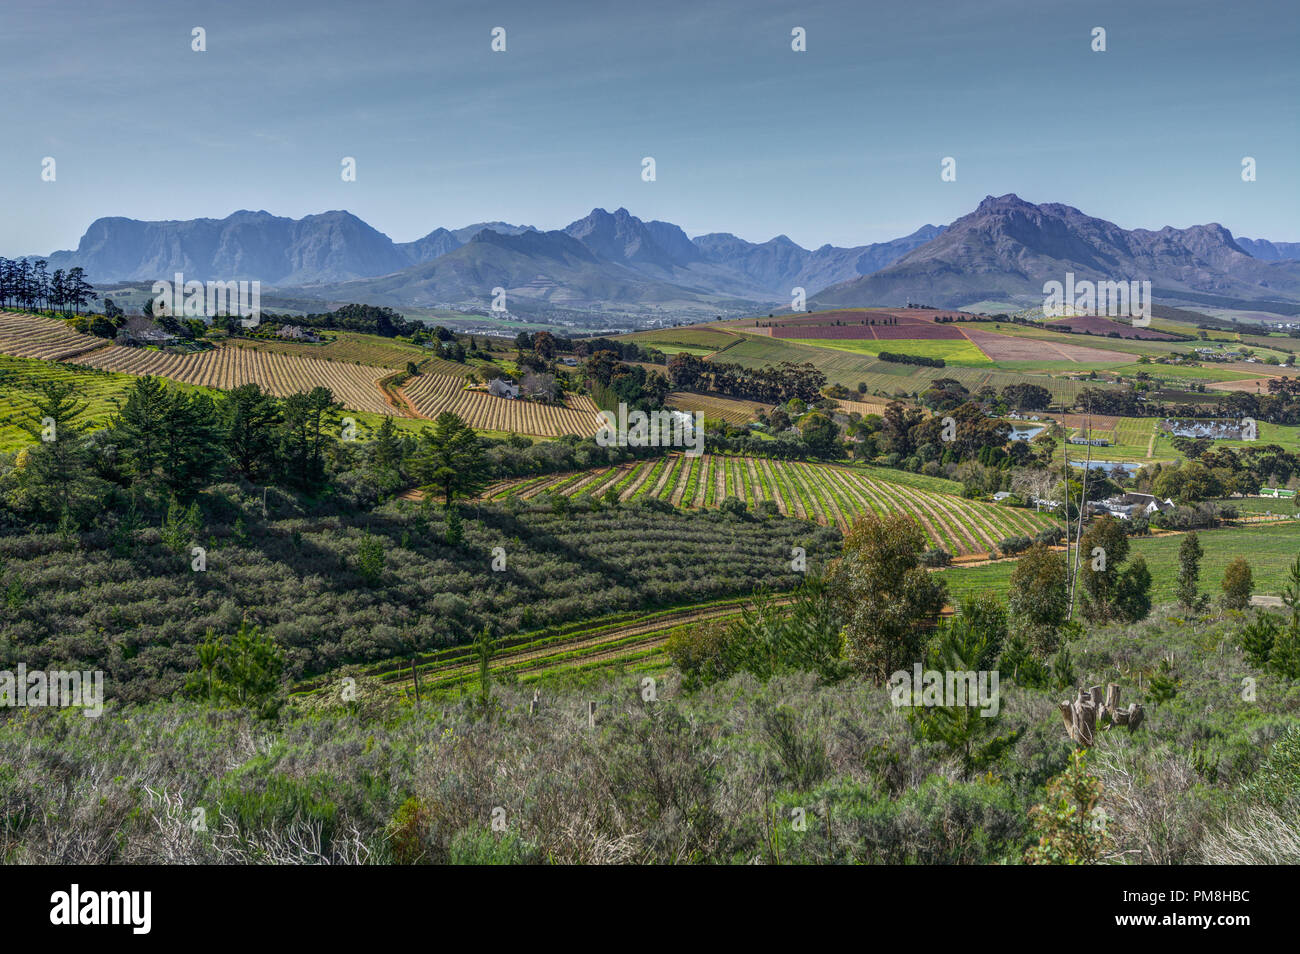 Devon valley vineyards, Stellenbosch, South Africa Stock Photo